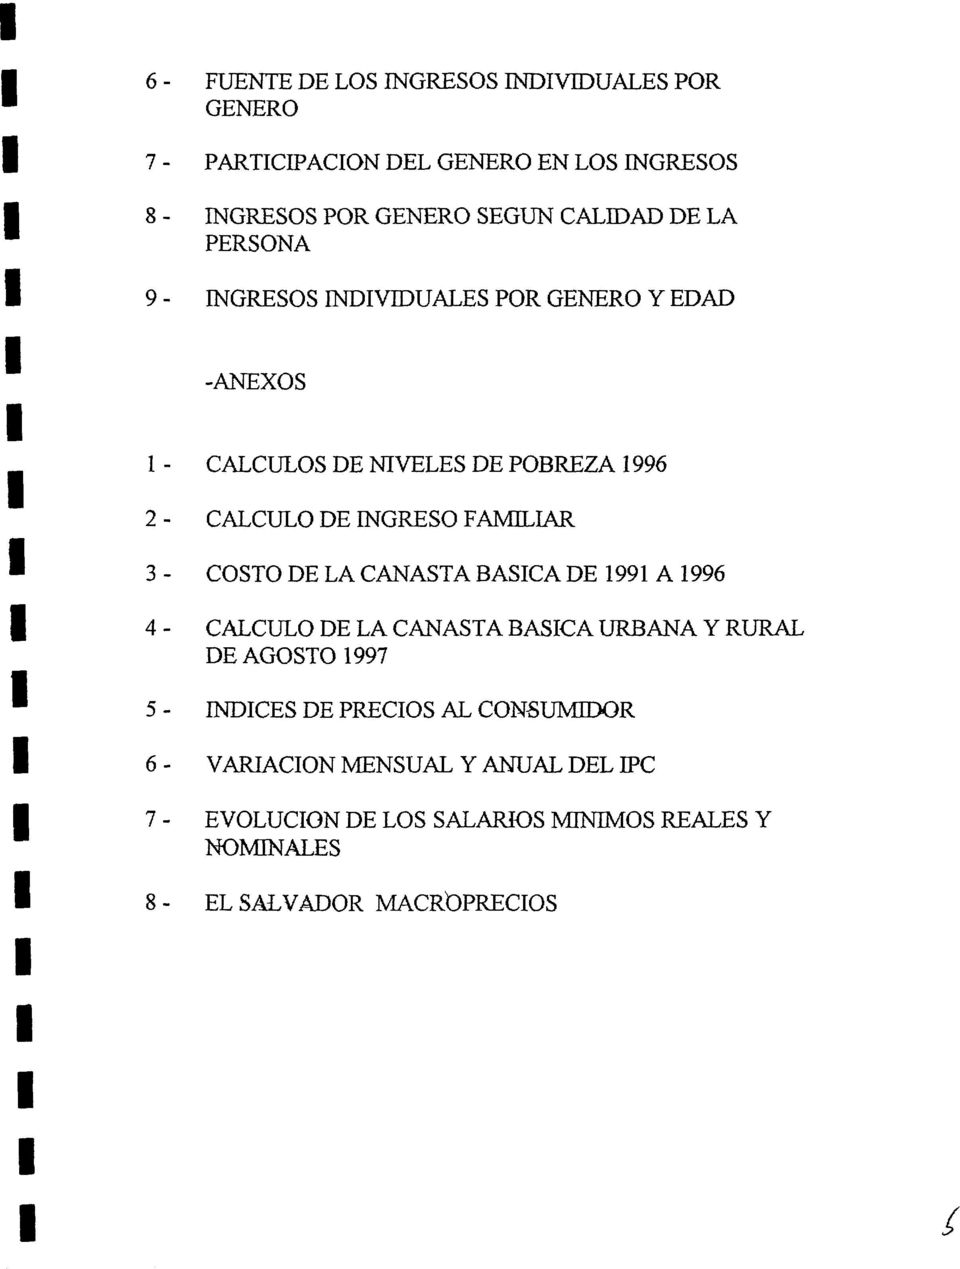 3 - COSTO DE LA CANASTA BASCA DE 1991 A 1996 4- CALCULO DE LA CANASTA BASCA URBANA y RURAL DE AGOSTO 1997 5- NDCES DE PRECOS